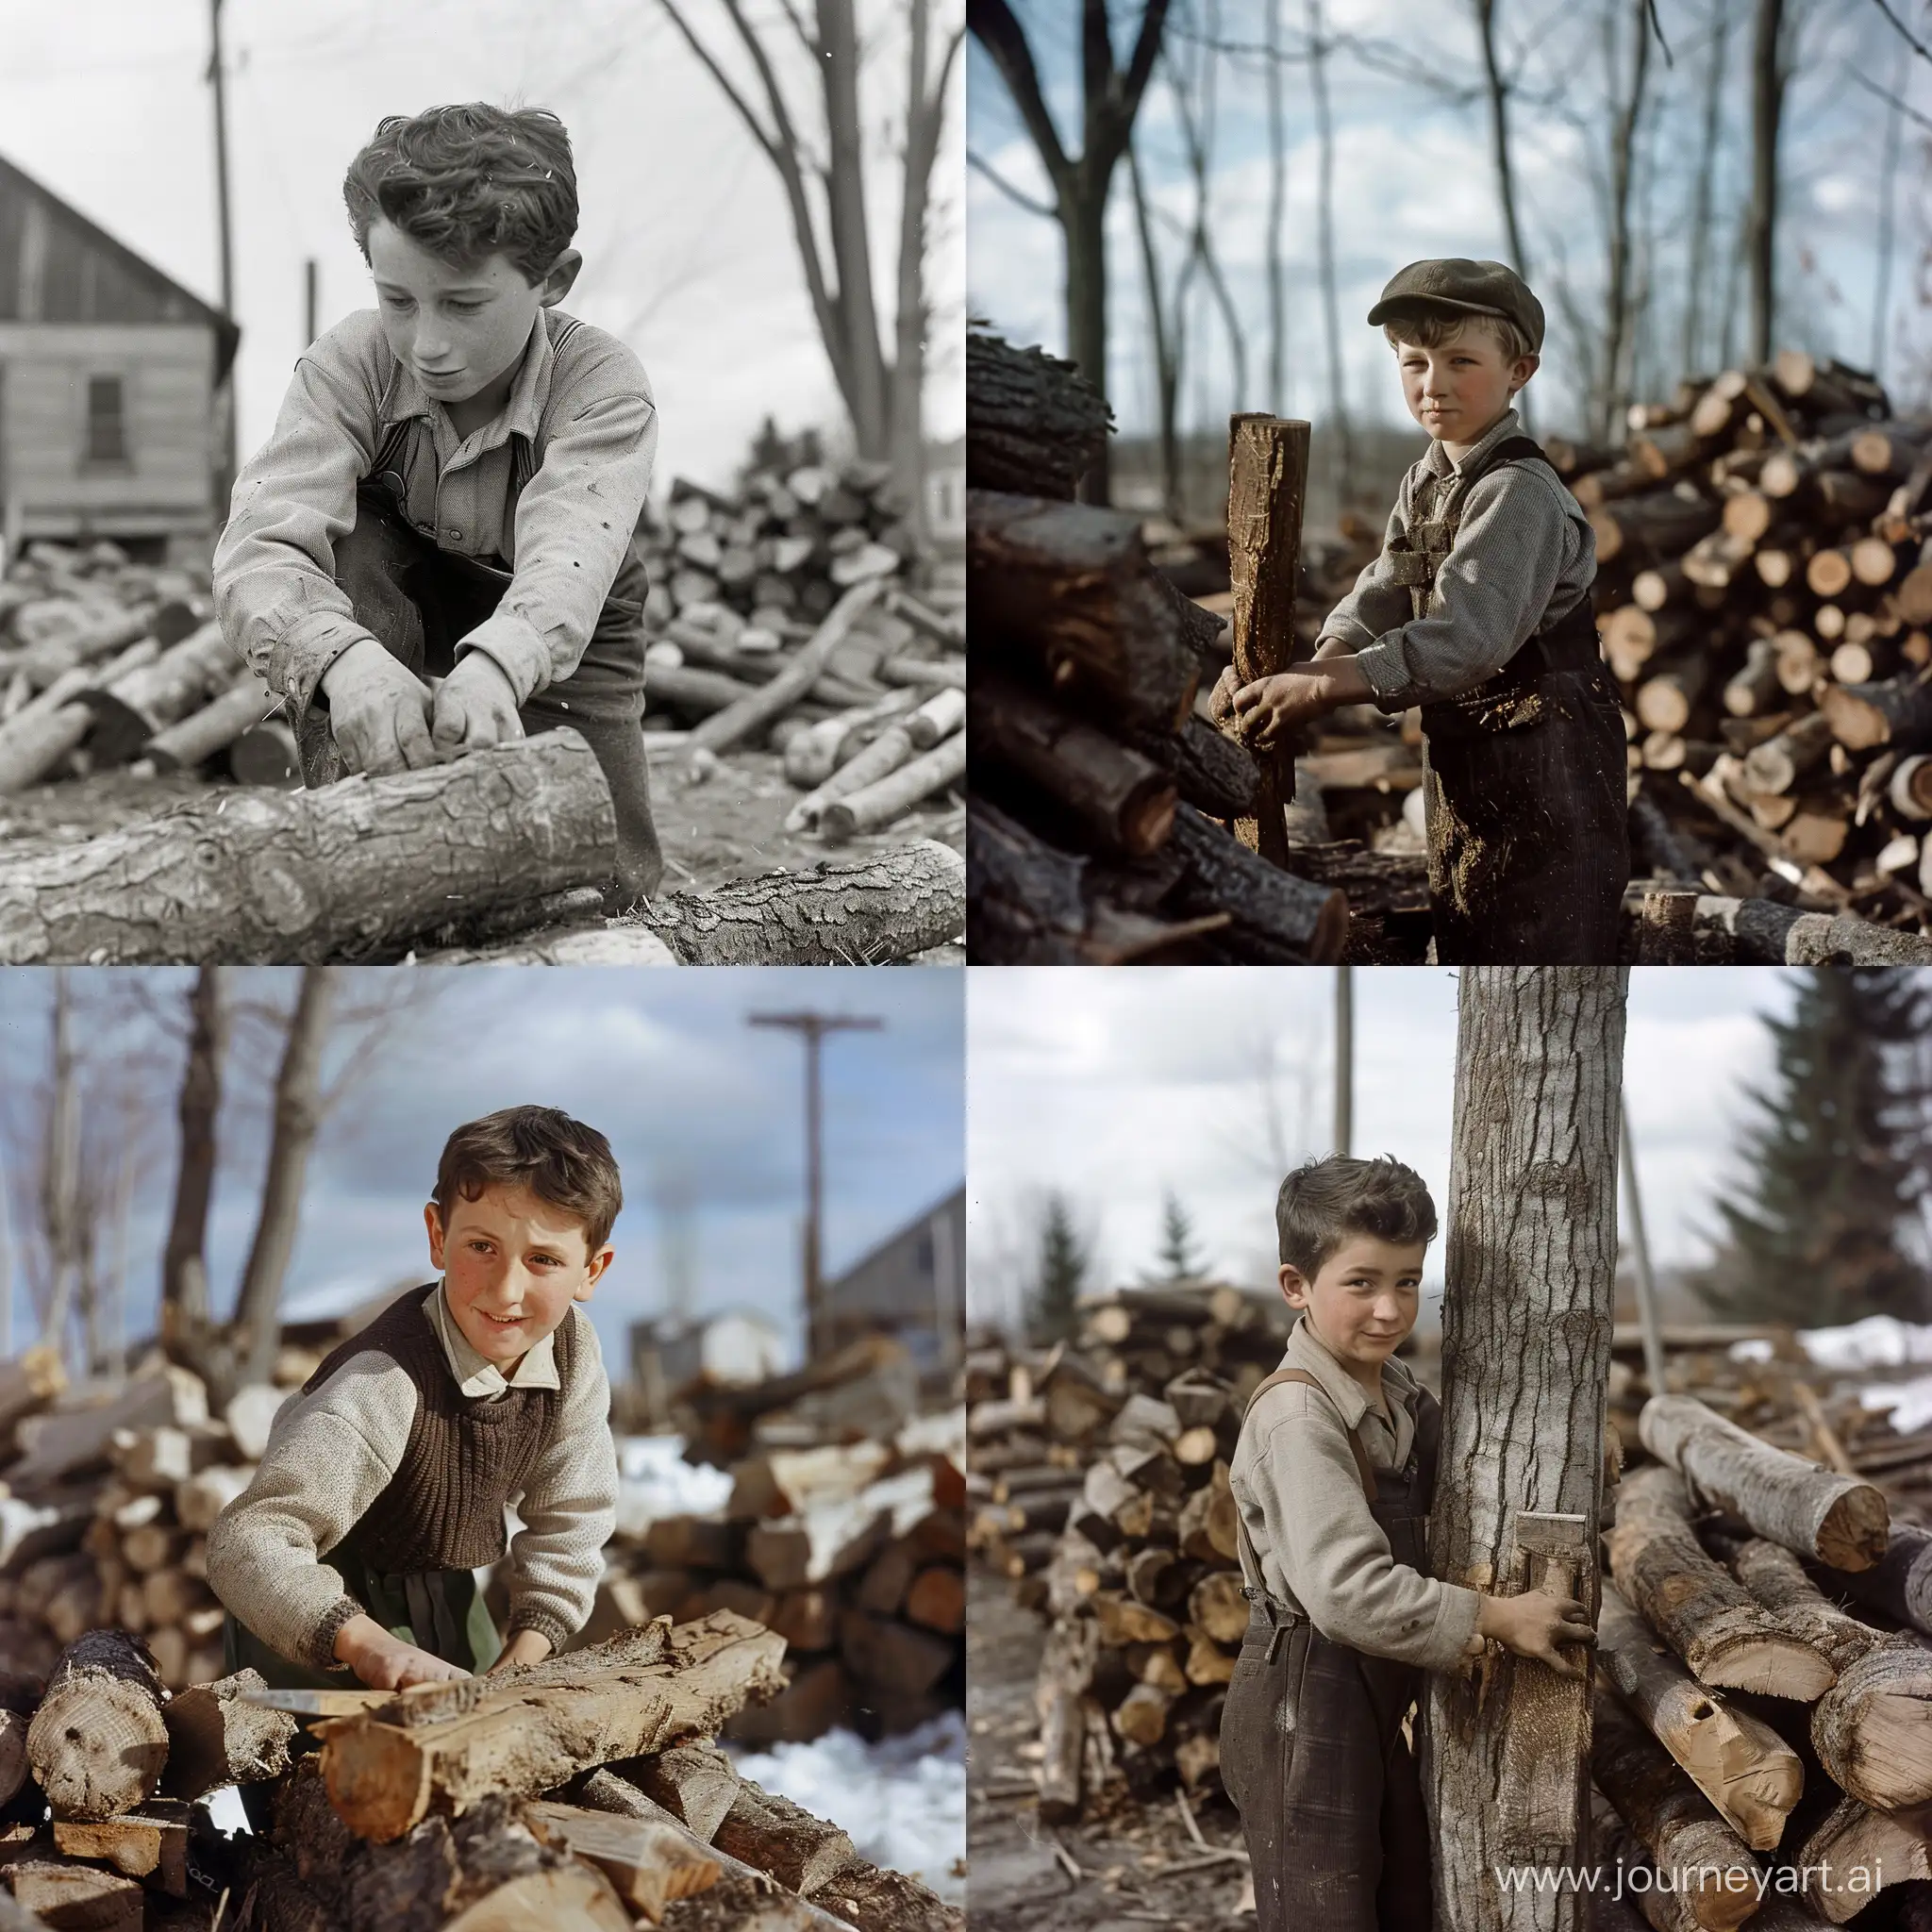 A 14-year-old boy cutting wood in Canada in 1944